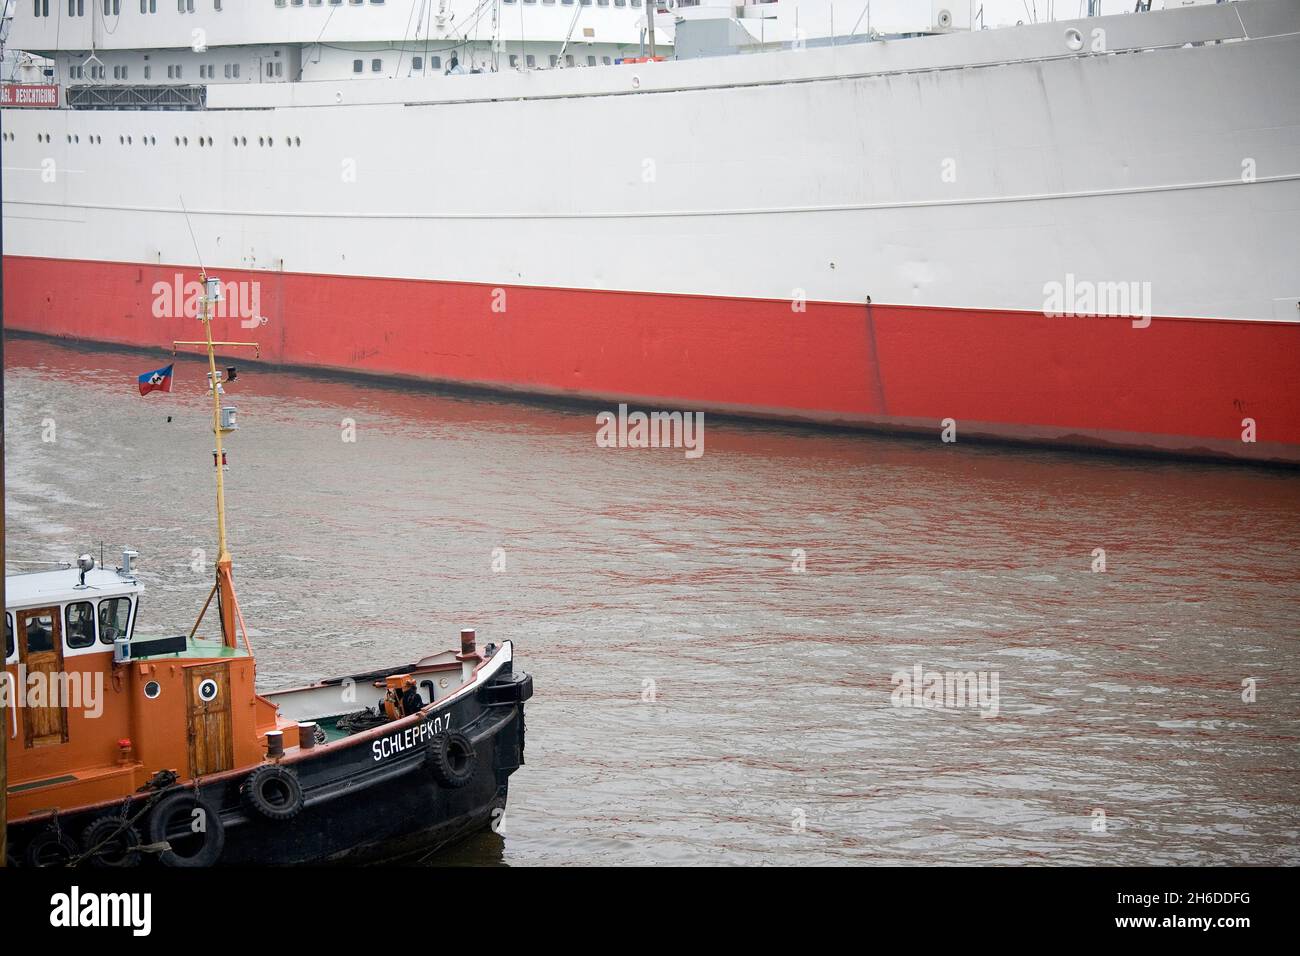 tugboat in the Port of Hamburg, Germany, Hamburg Stock Photo